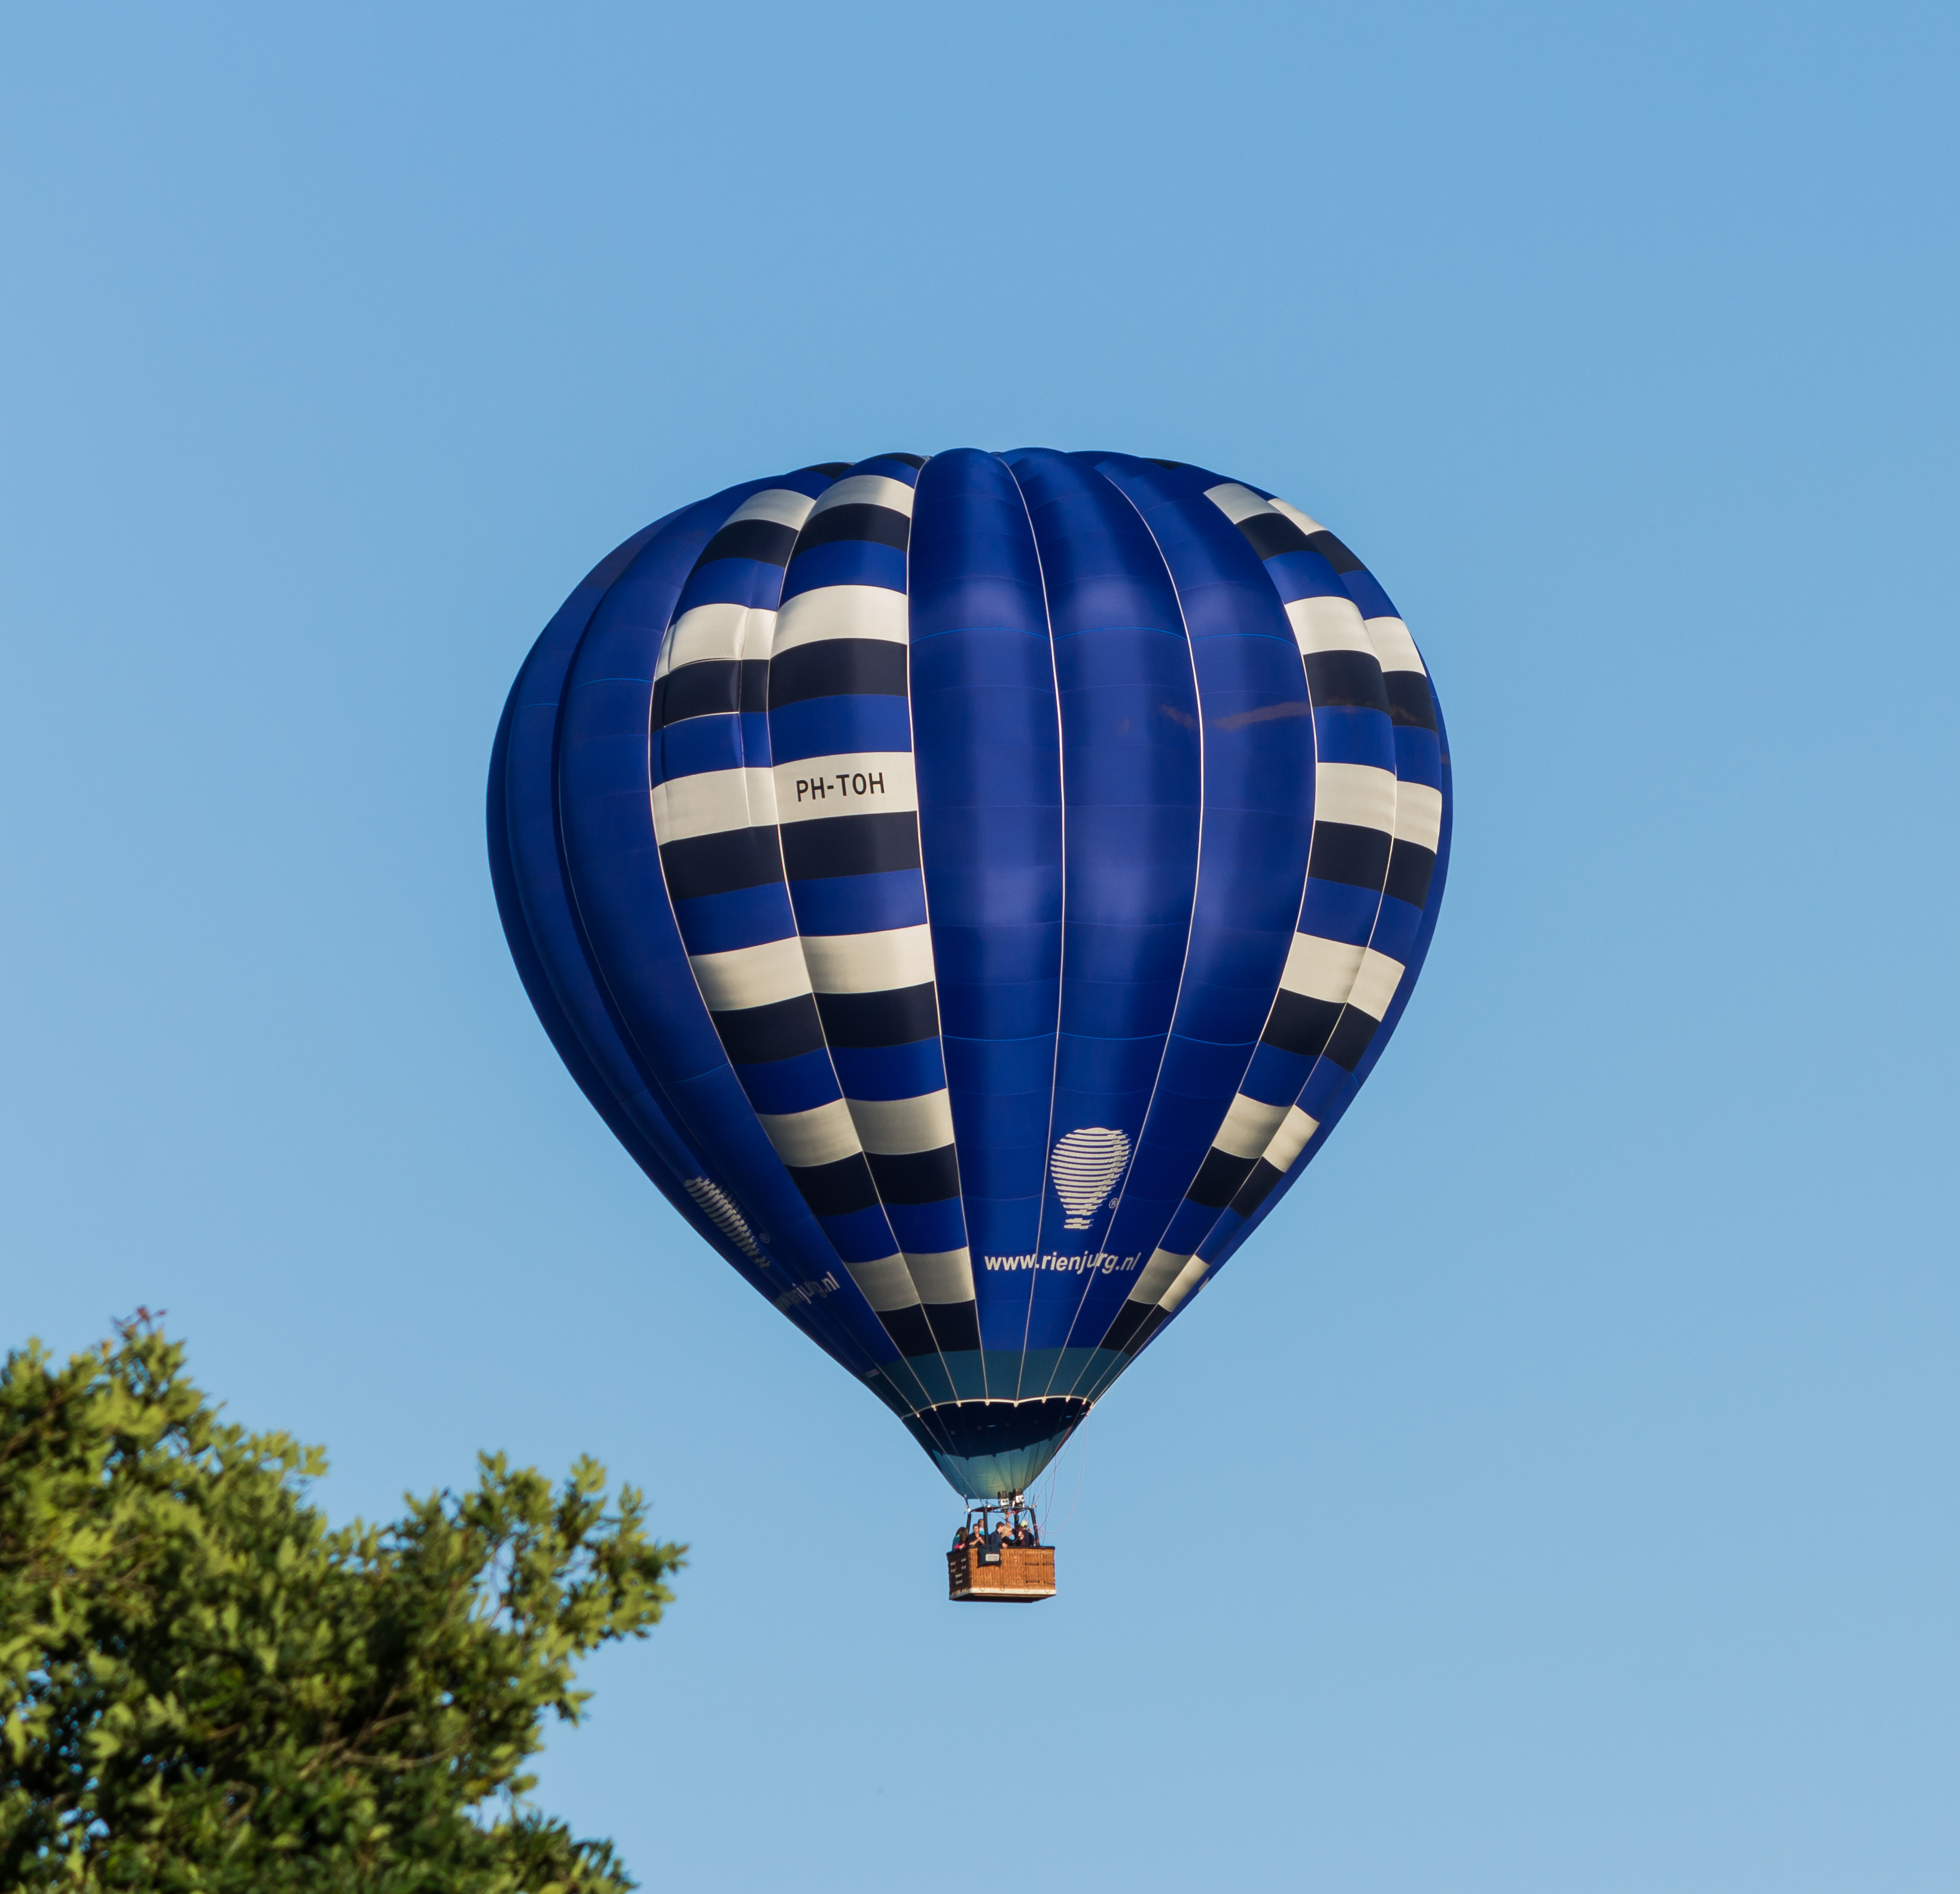 PH-TOH ballon op de Jaarlijkse Friese ballonfeesten in Joure